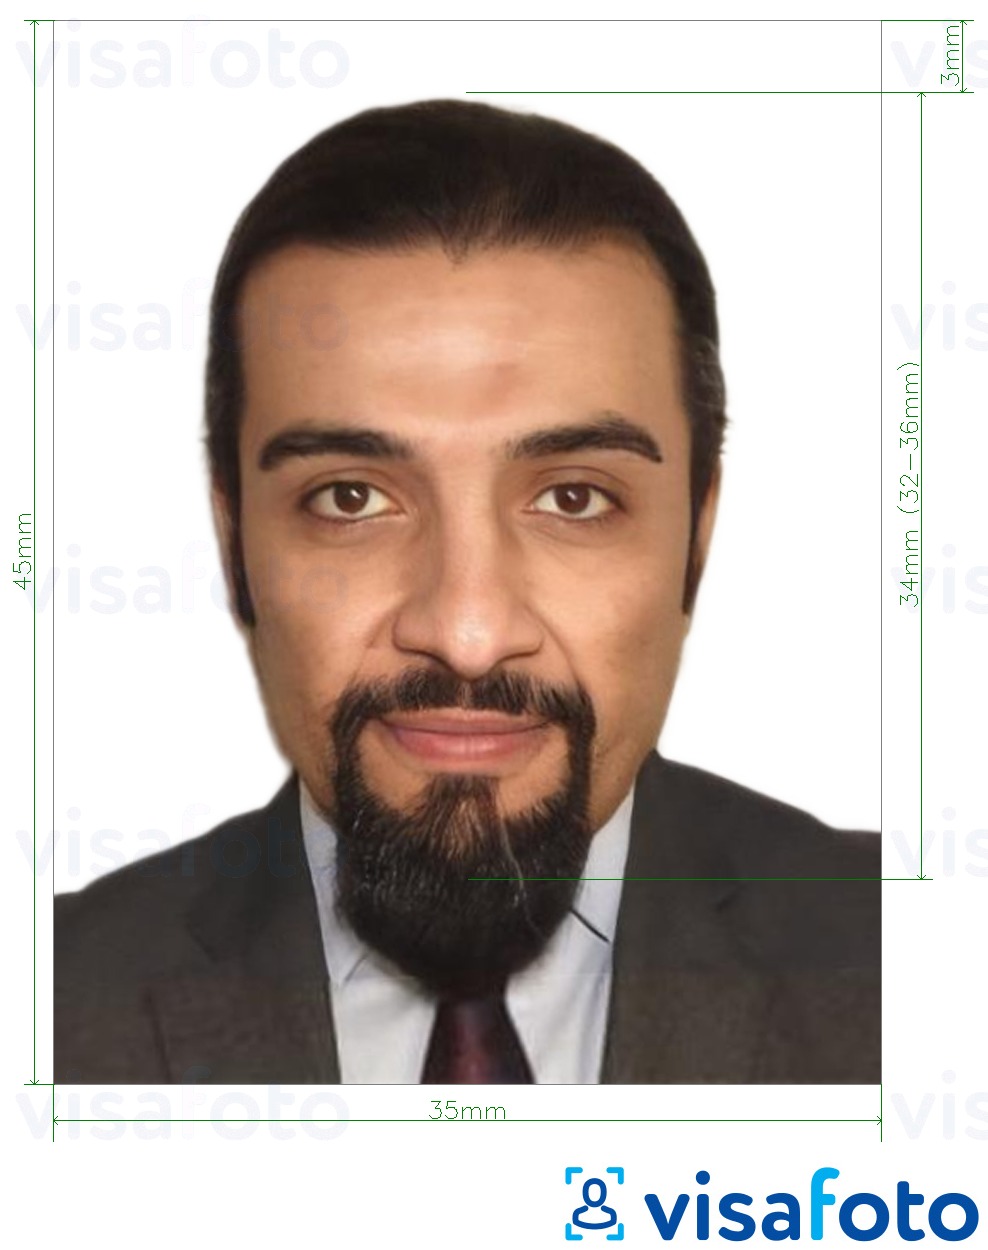 Exemple de foto per a Líban visa 3,5x4,5 cm (35x45 mm) amb la mida exacta especificada